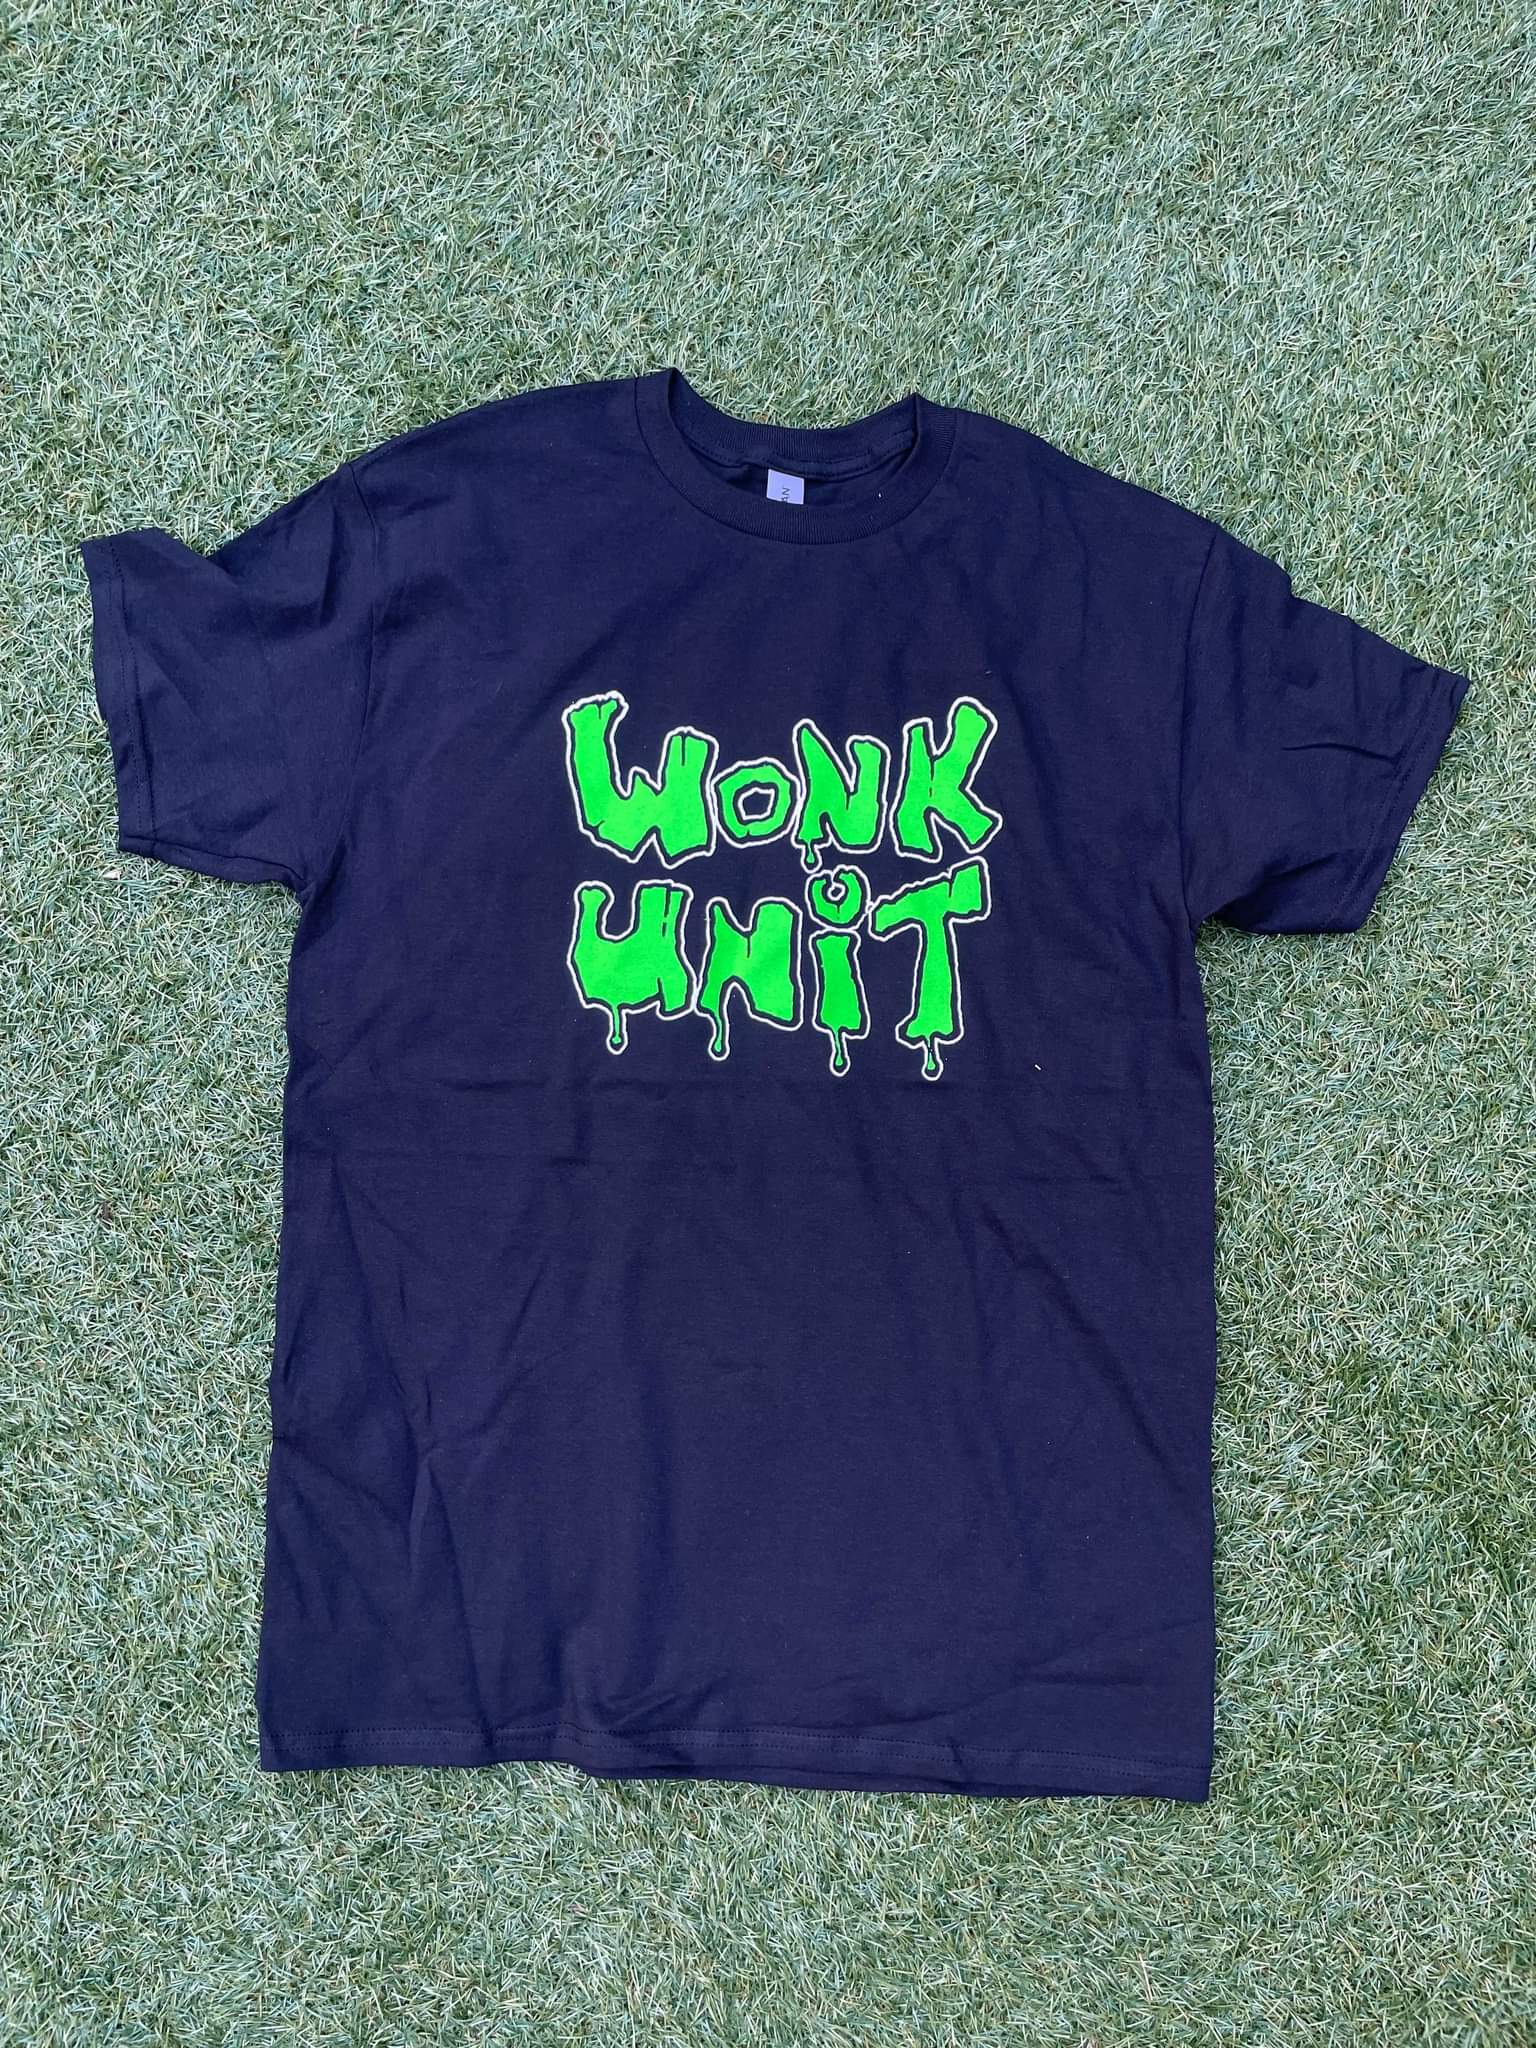 Wonk unit logo tshirt size XXL - Wonk Unit